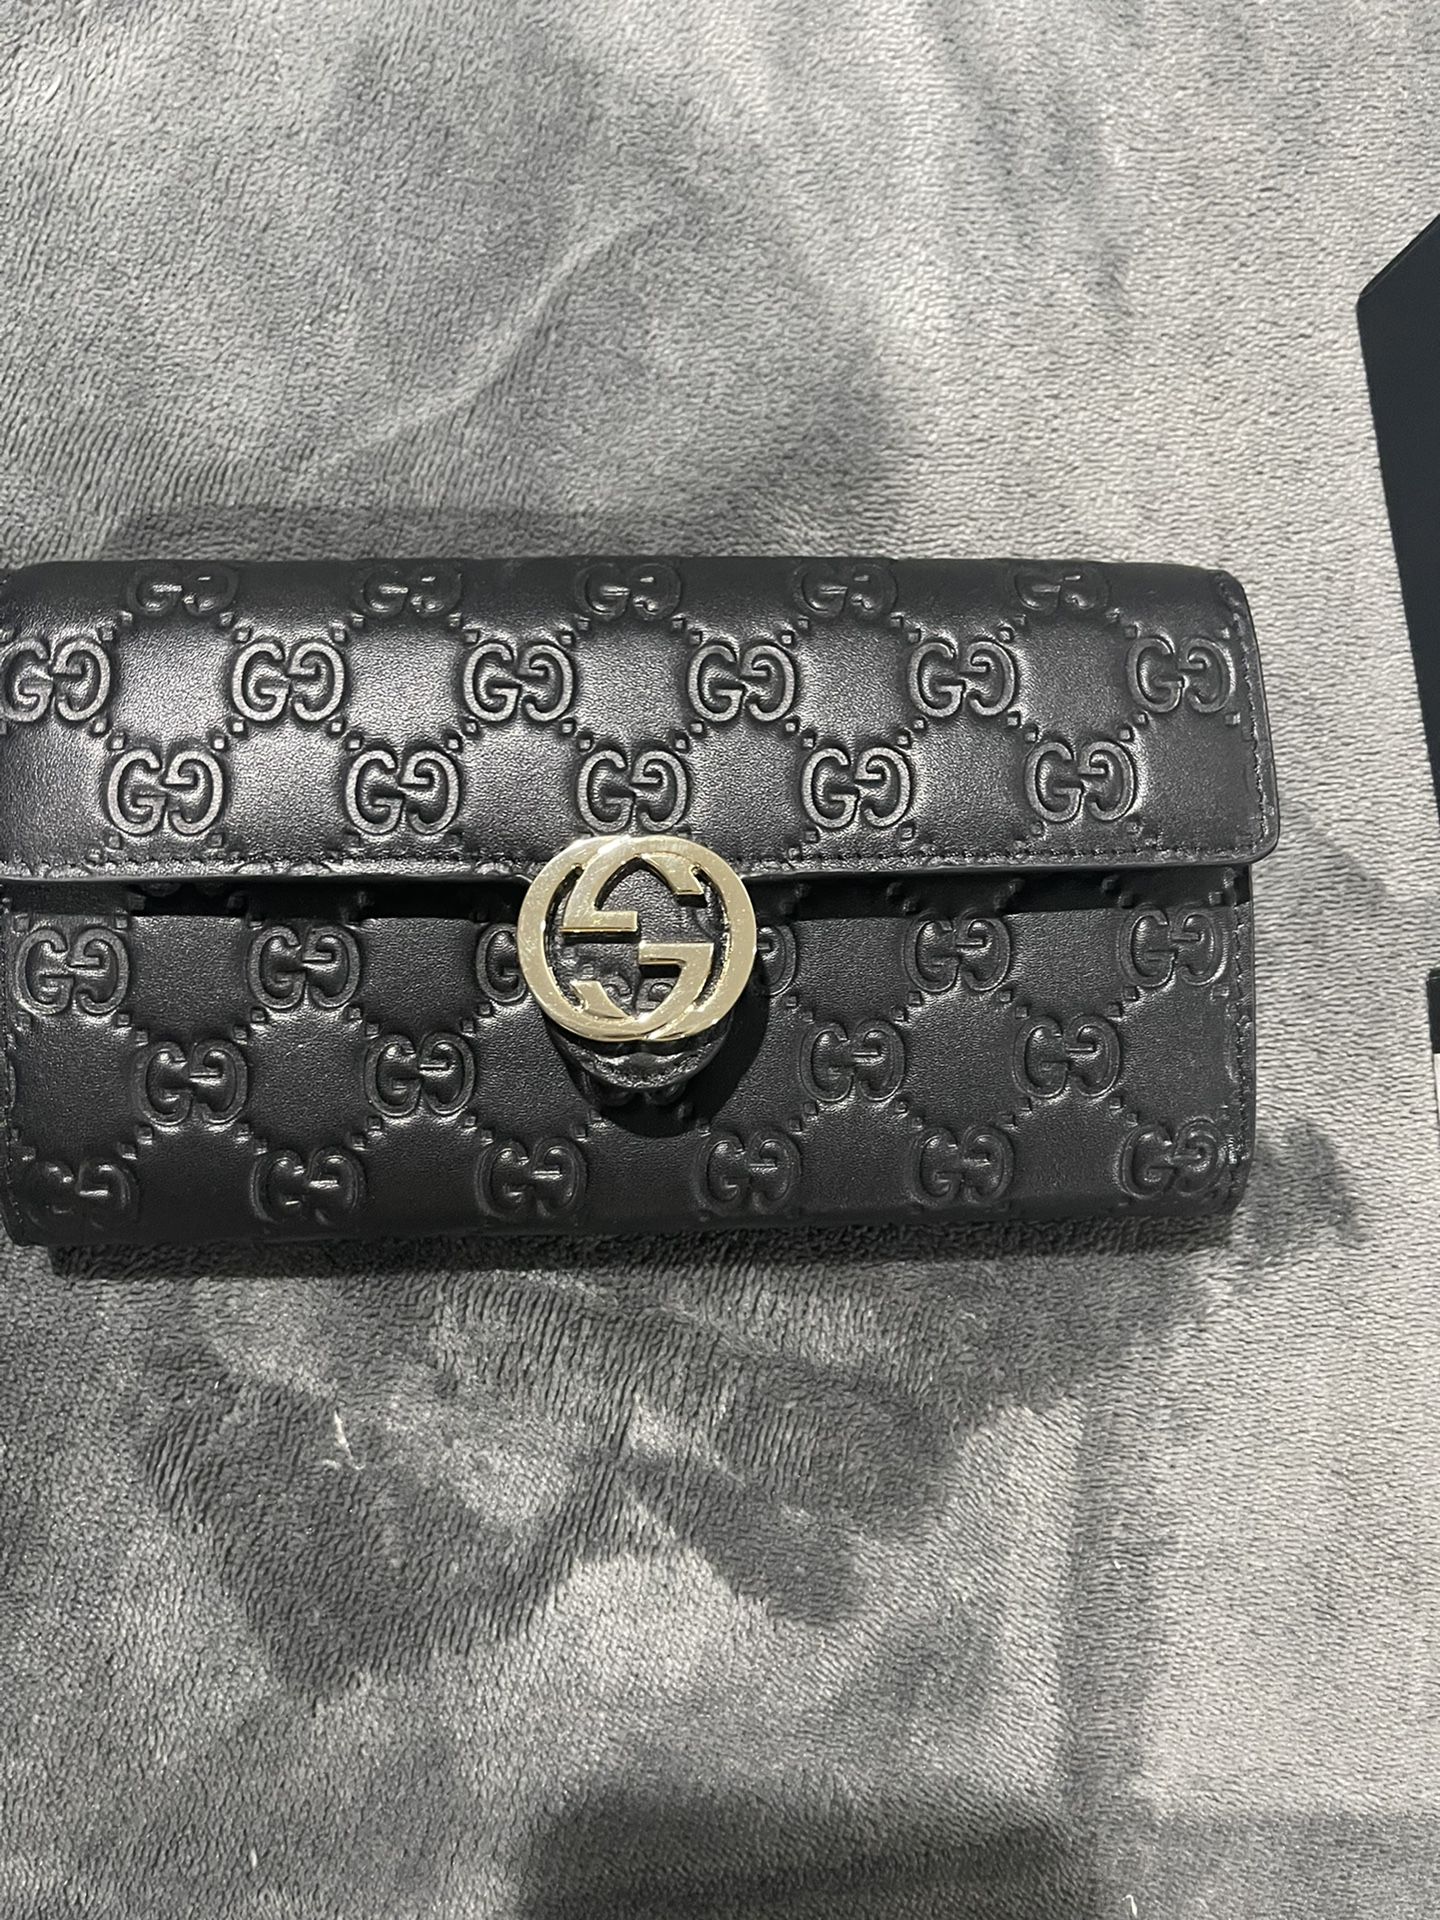 Gucci - Guccisima Wallet